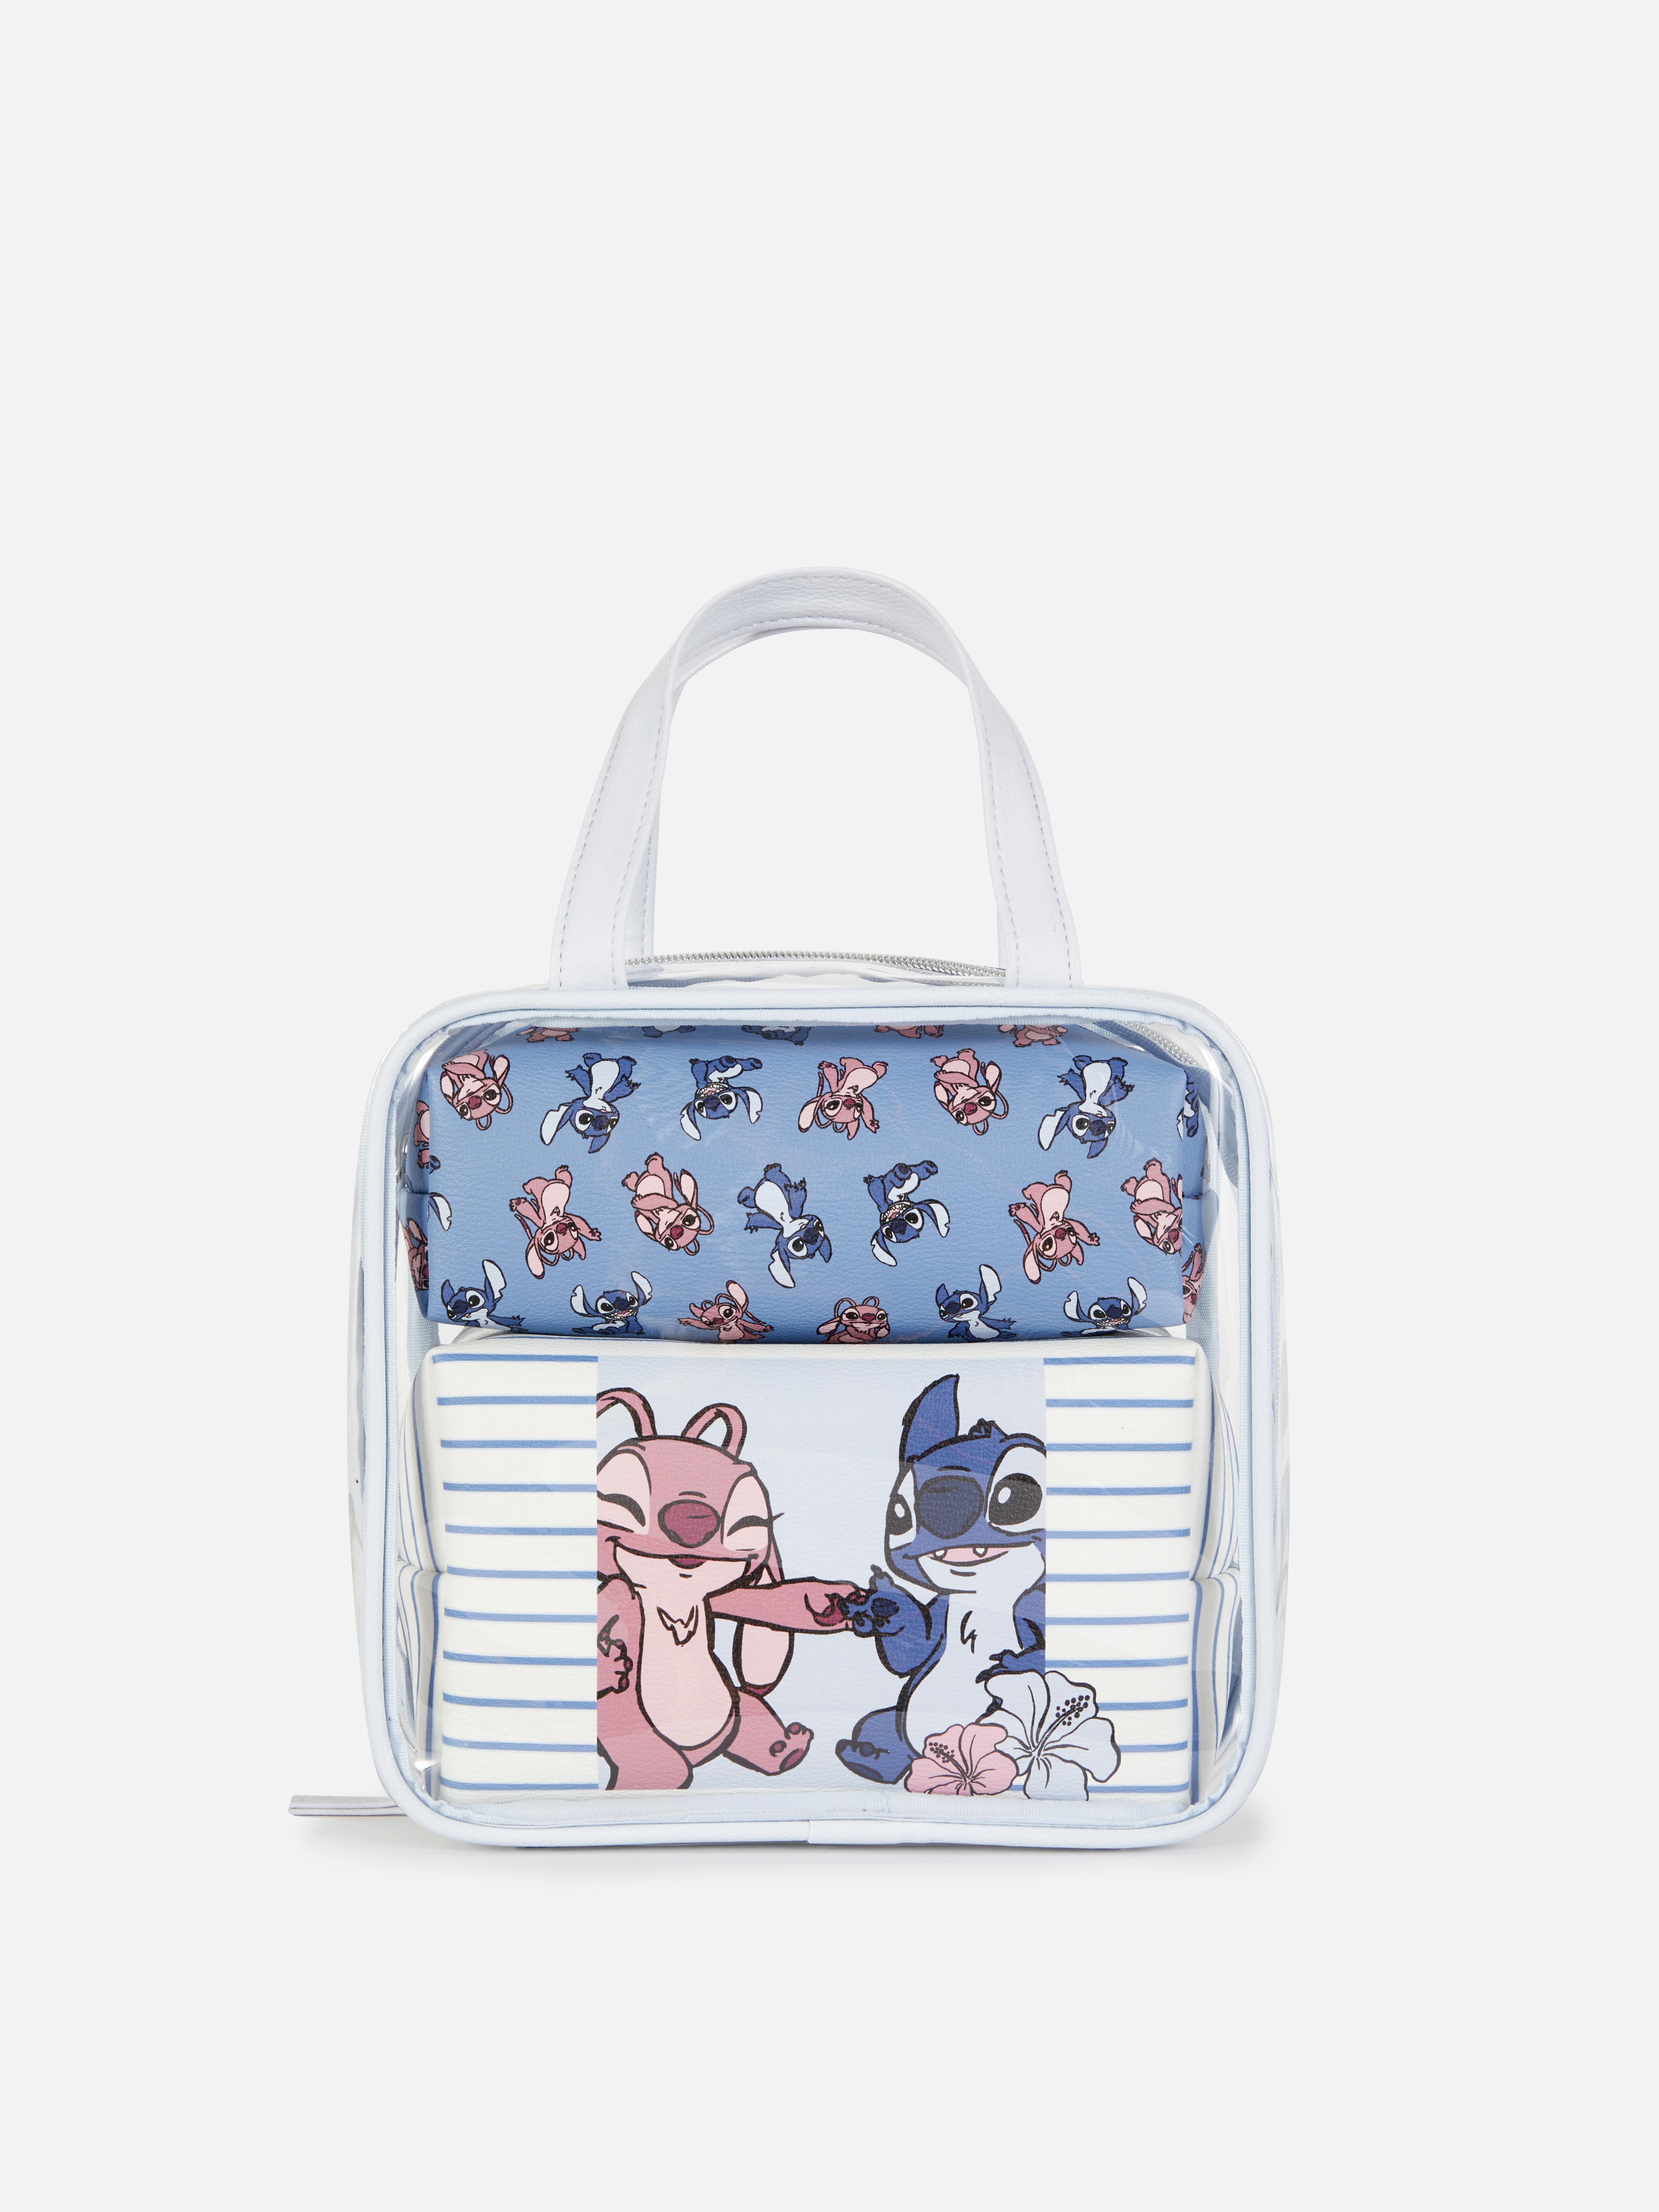 ALTRI: Lilo & Stitch Disney Basic Sac à Dos Enfant + Coffret Cadeau 3 En 1  Accessoires - Vendiloshop